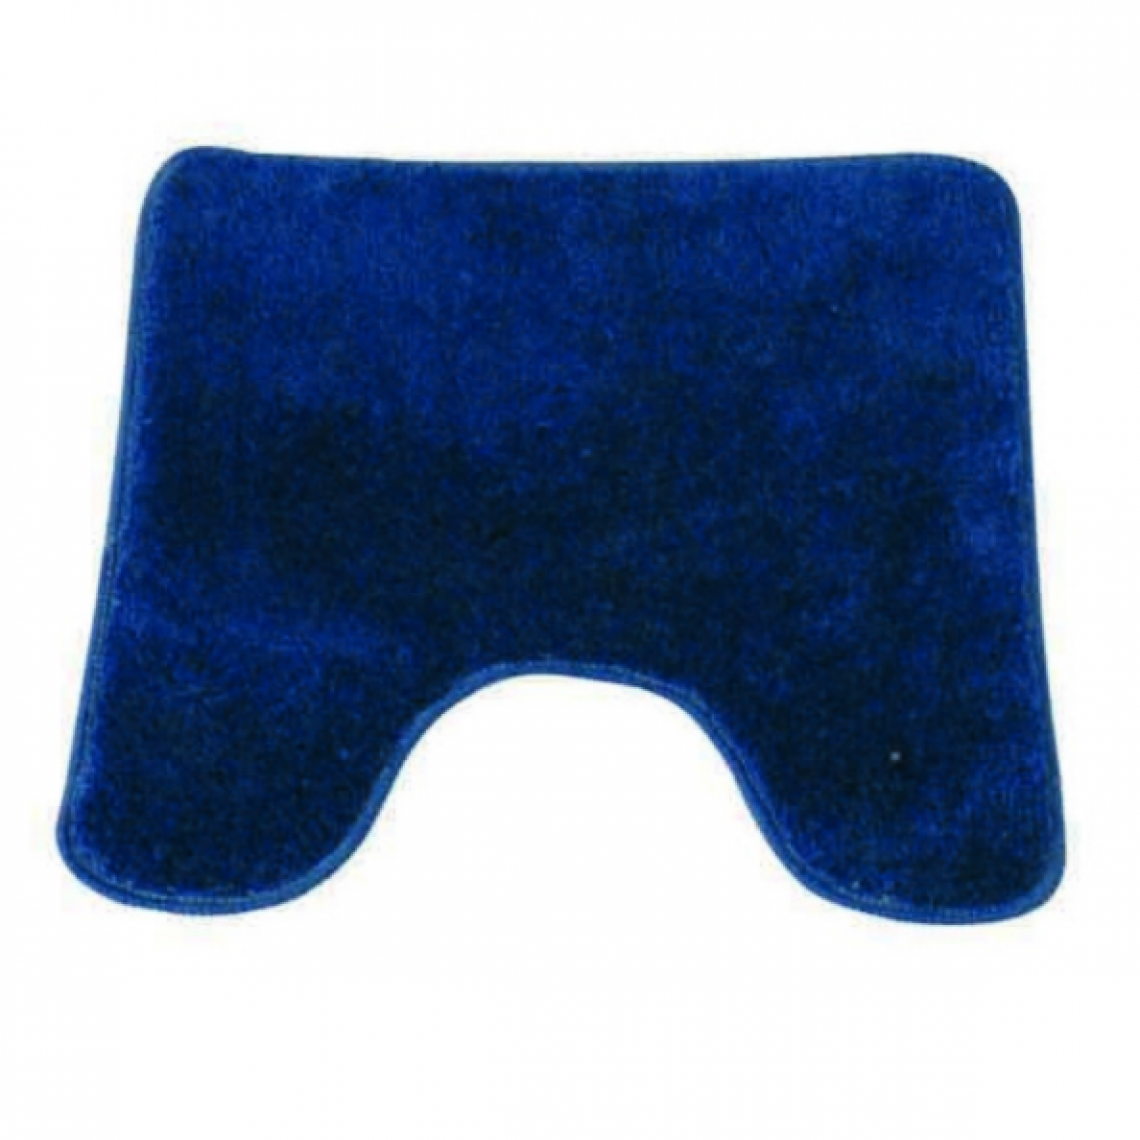 Msv - MSV Tapis de bain Acrylique avec semelle en Latex 50x50cm Bleu Marine - Tapis